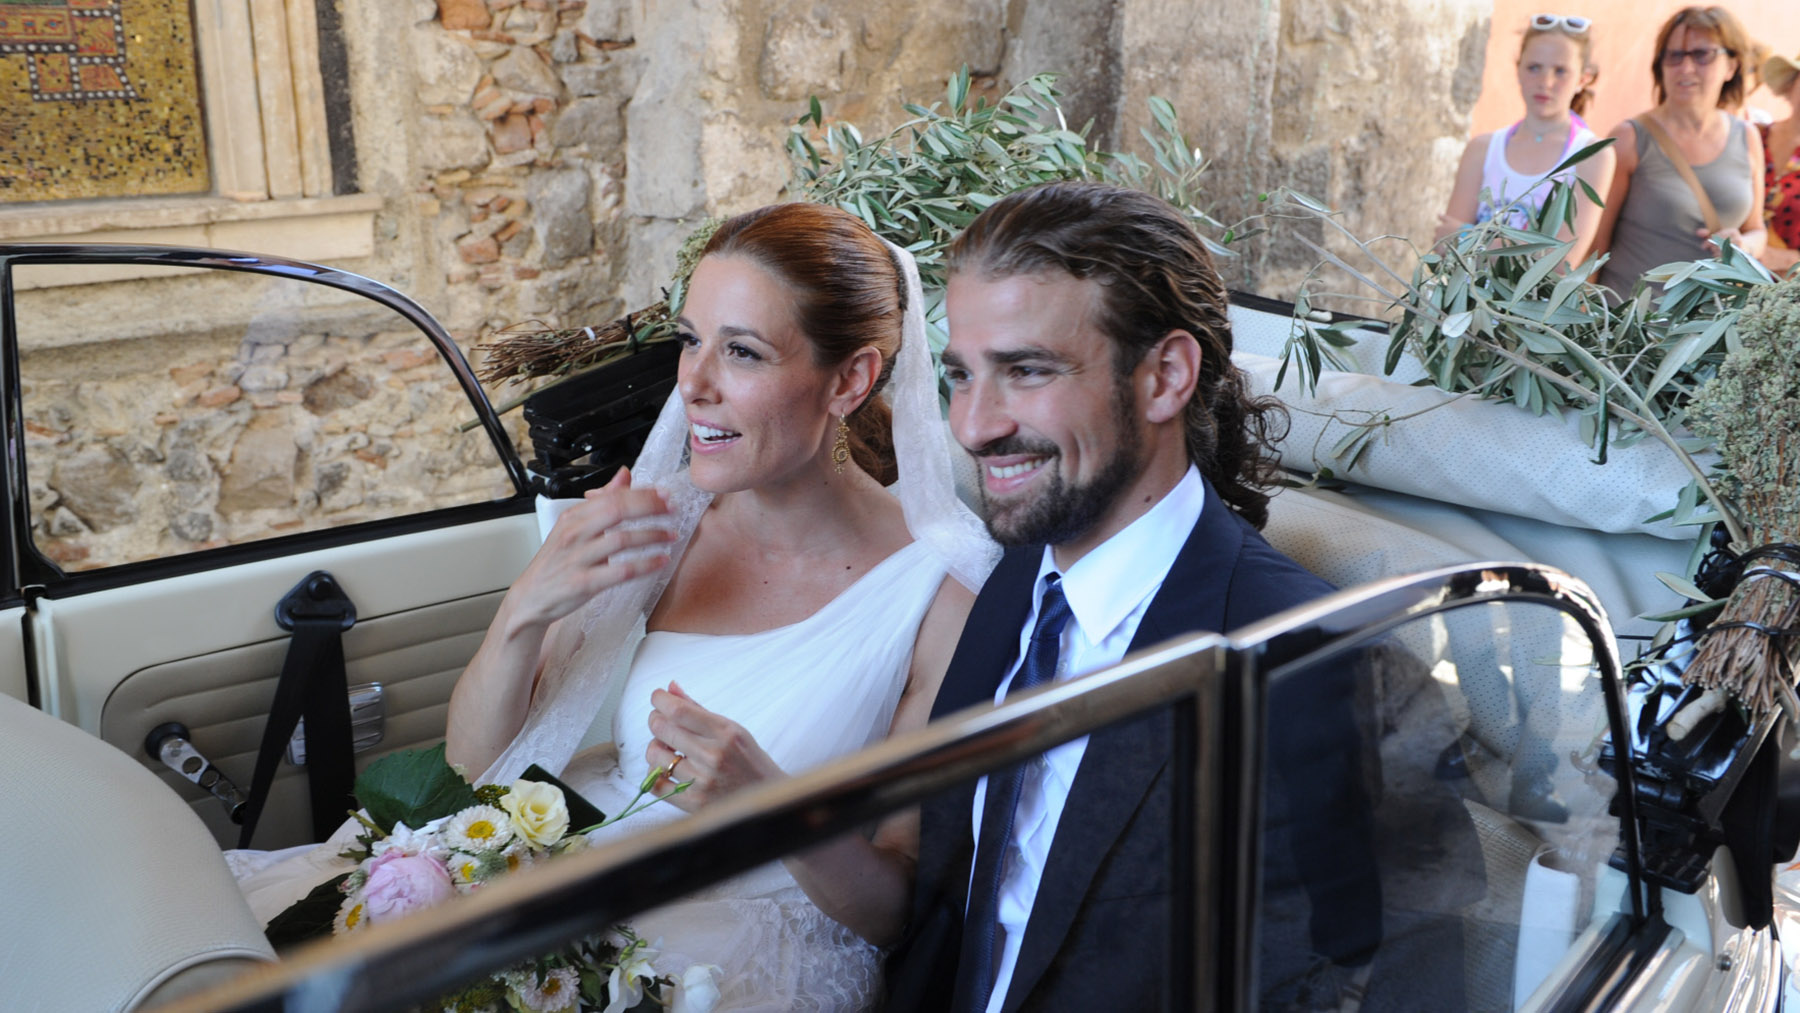 Raquel Sánchez Silva y Mario Biondo, el día de su boda / Gtres